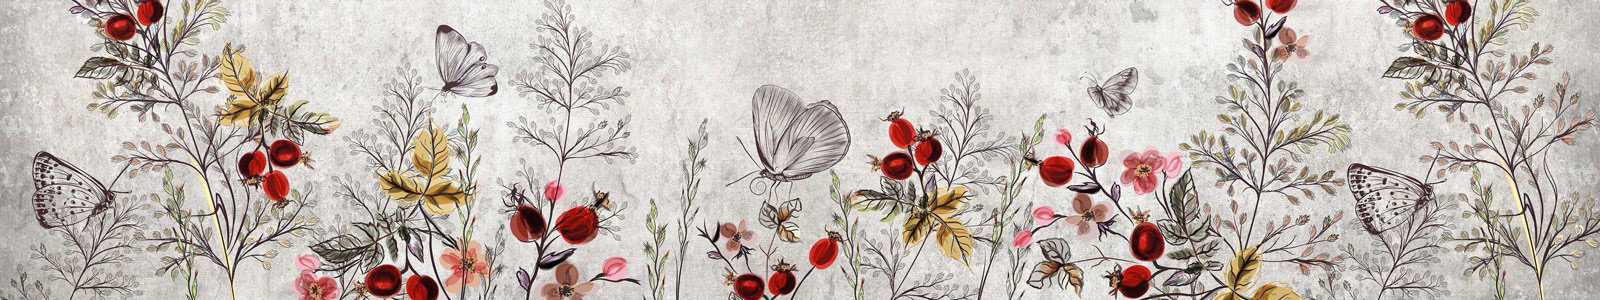 №6641 - Полевые цветы с бабочками в графическом исполнении на сером фоне